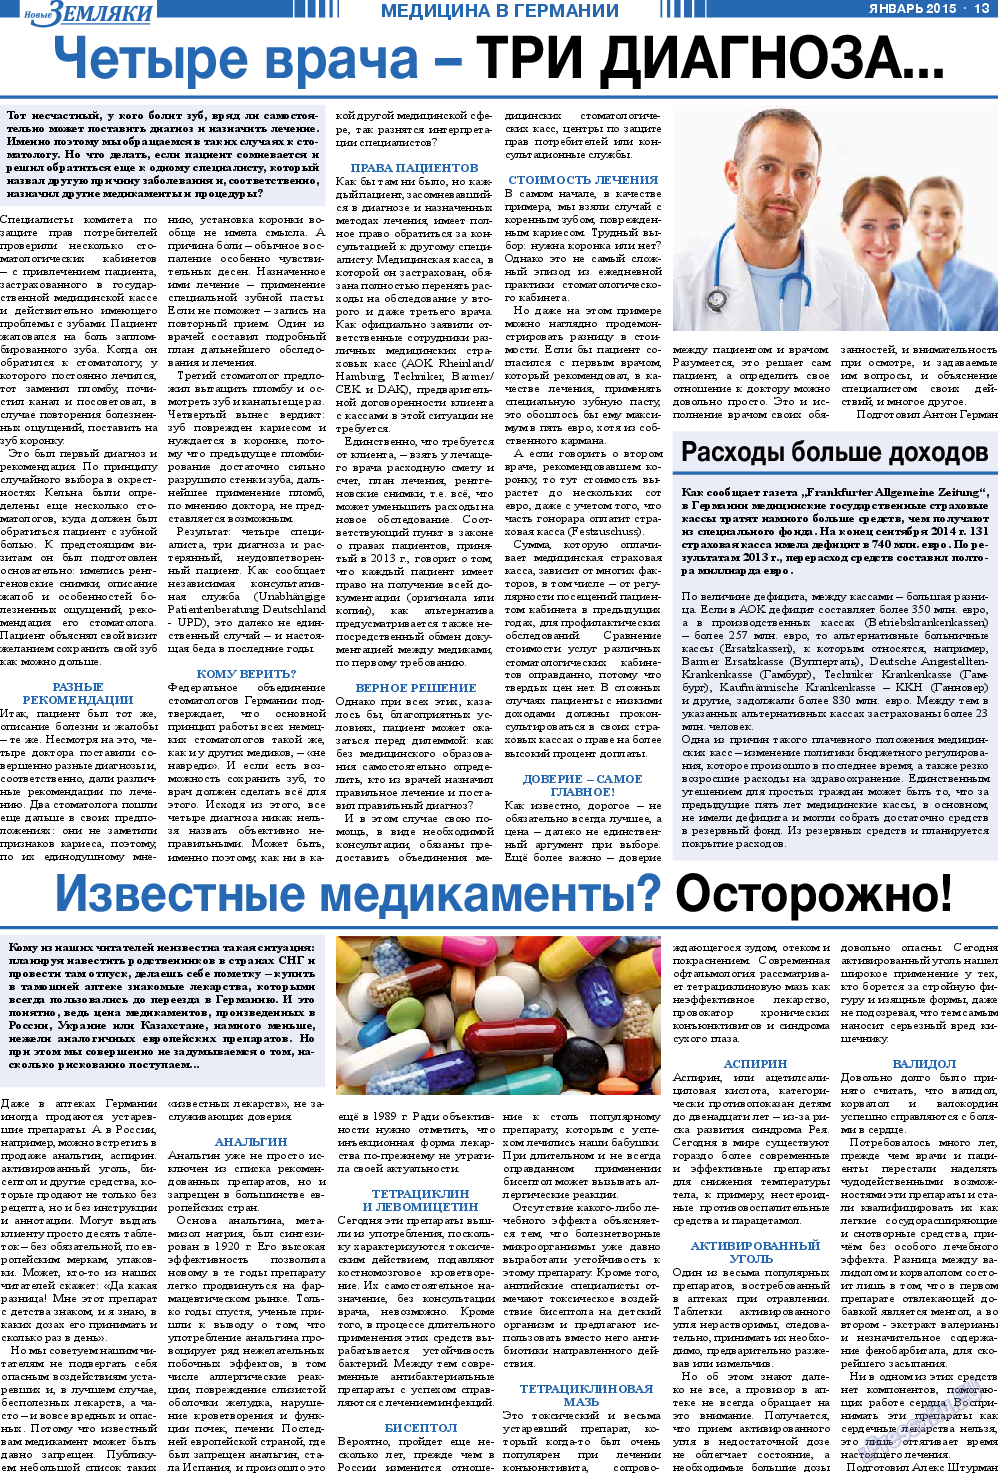 Новые Земляки, газета. 2015 №1 стр.13